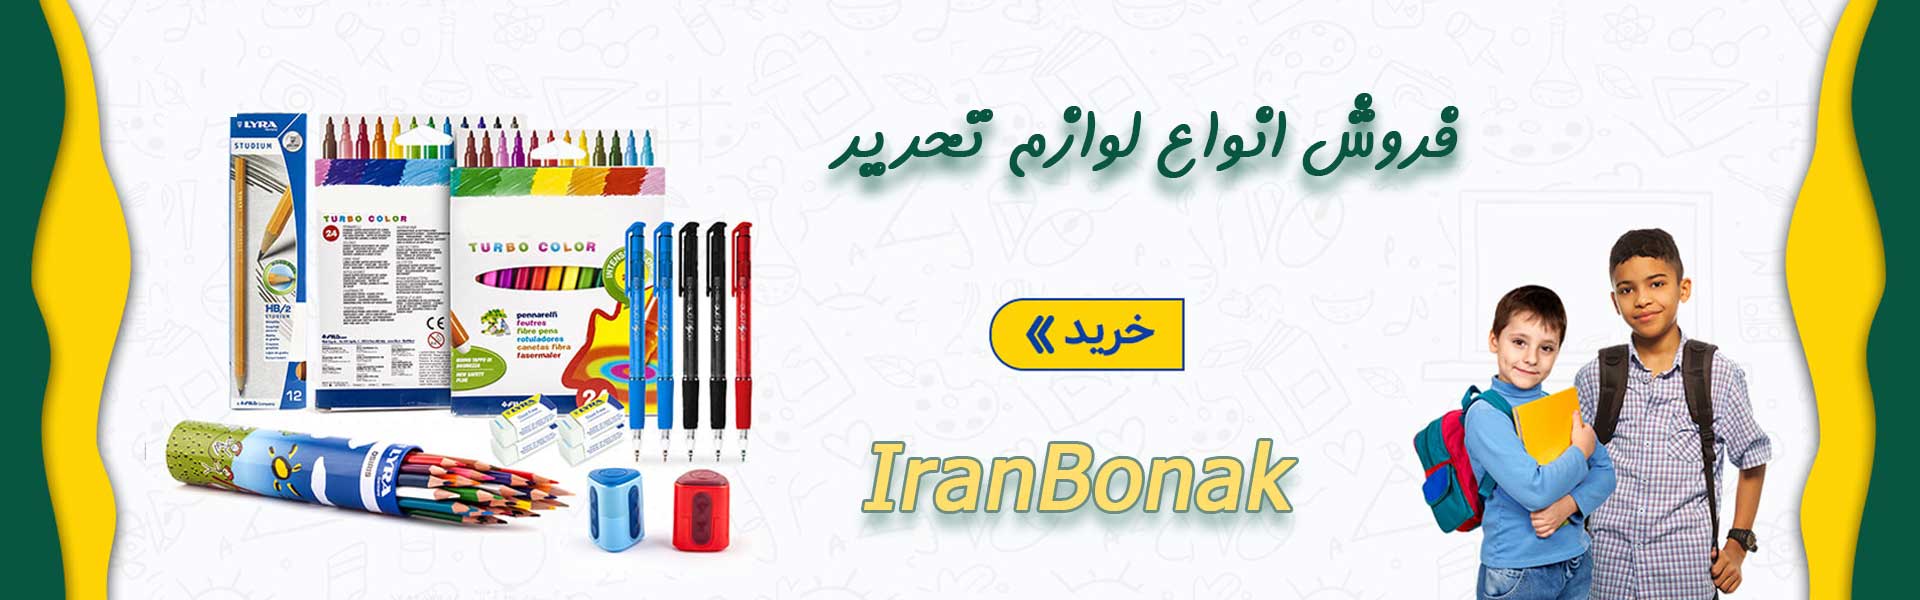 فروشگاه اینترنتی ایران بنک (حمید) - فروشگاه اینترنتی ایران بنک